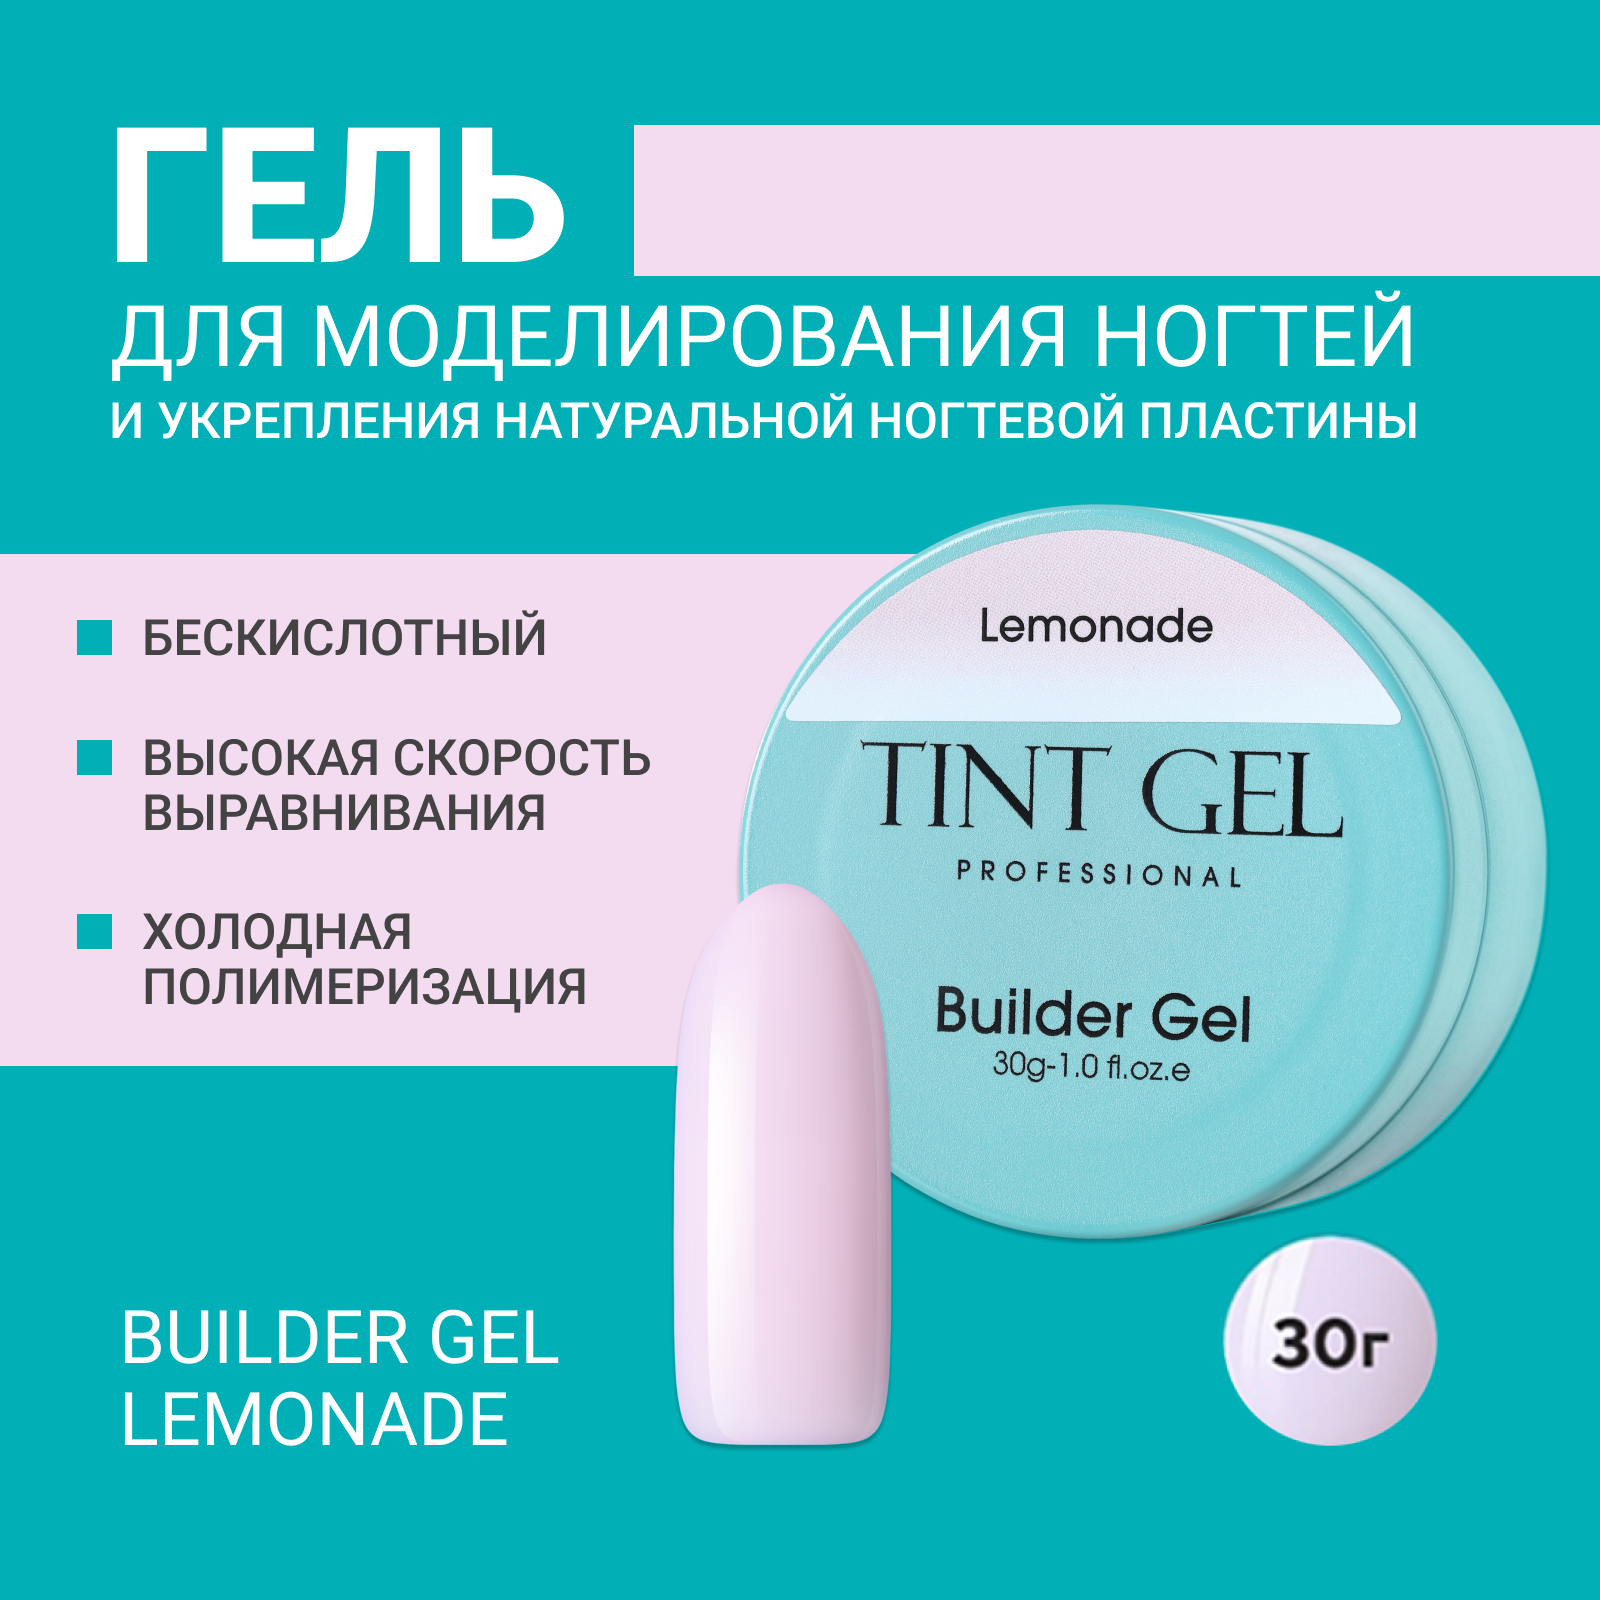 Гель Tint Gel Professional Builder gel Lemonade 30 г музыкальная эстетика м п мусоргского